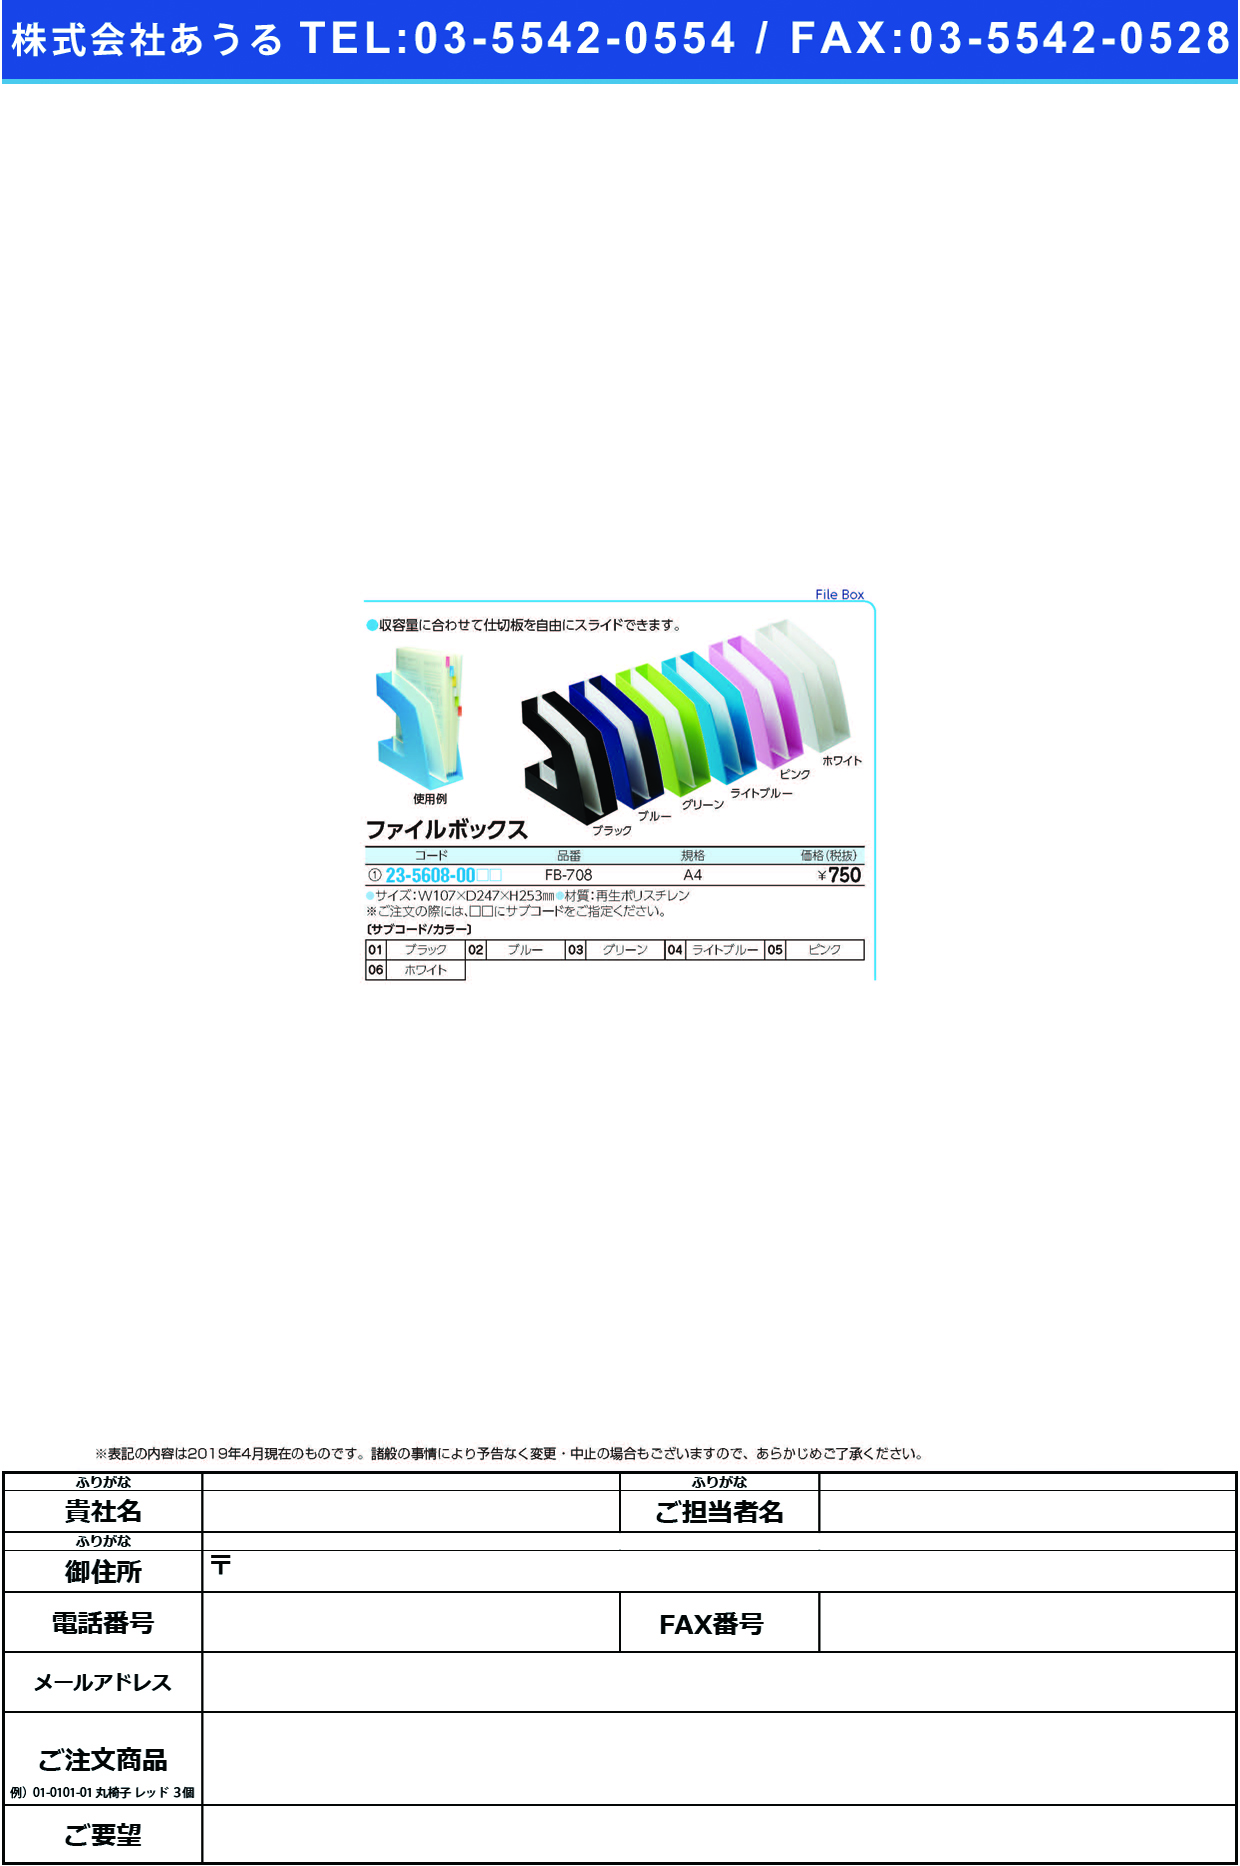 (23-5608-00)ファイルボックス FB-708(A4) ﾌｧｲﾙﾎﾞｯｸｽ グリーン【1個単位】【2019年カタログ商品】